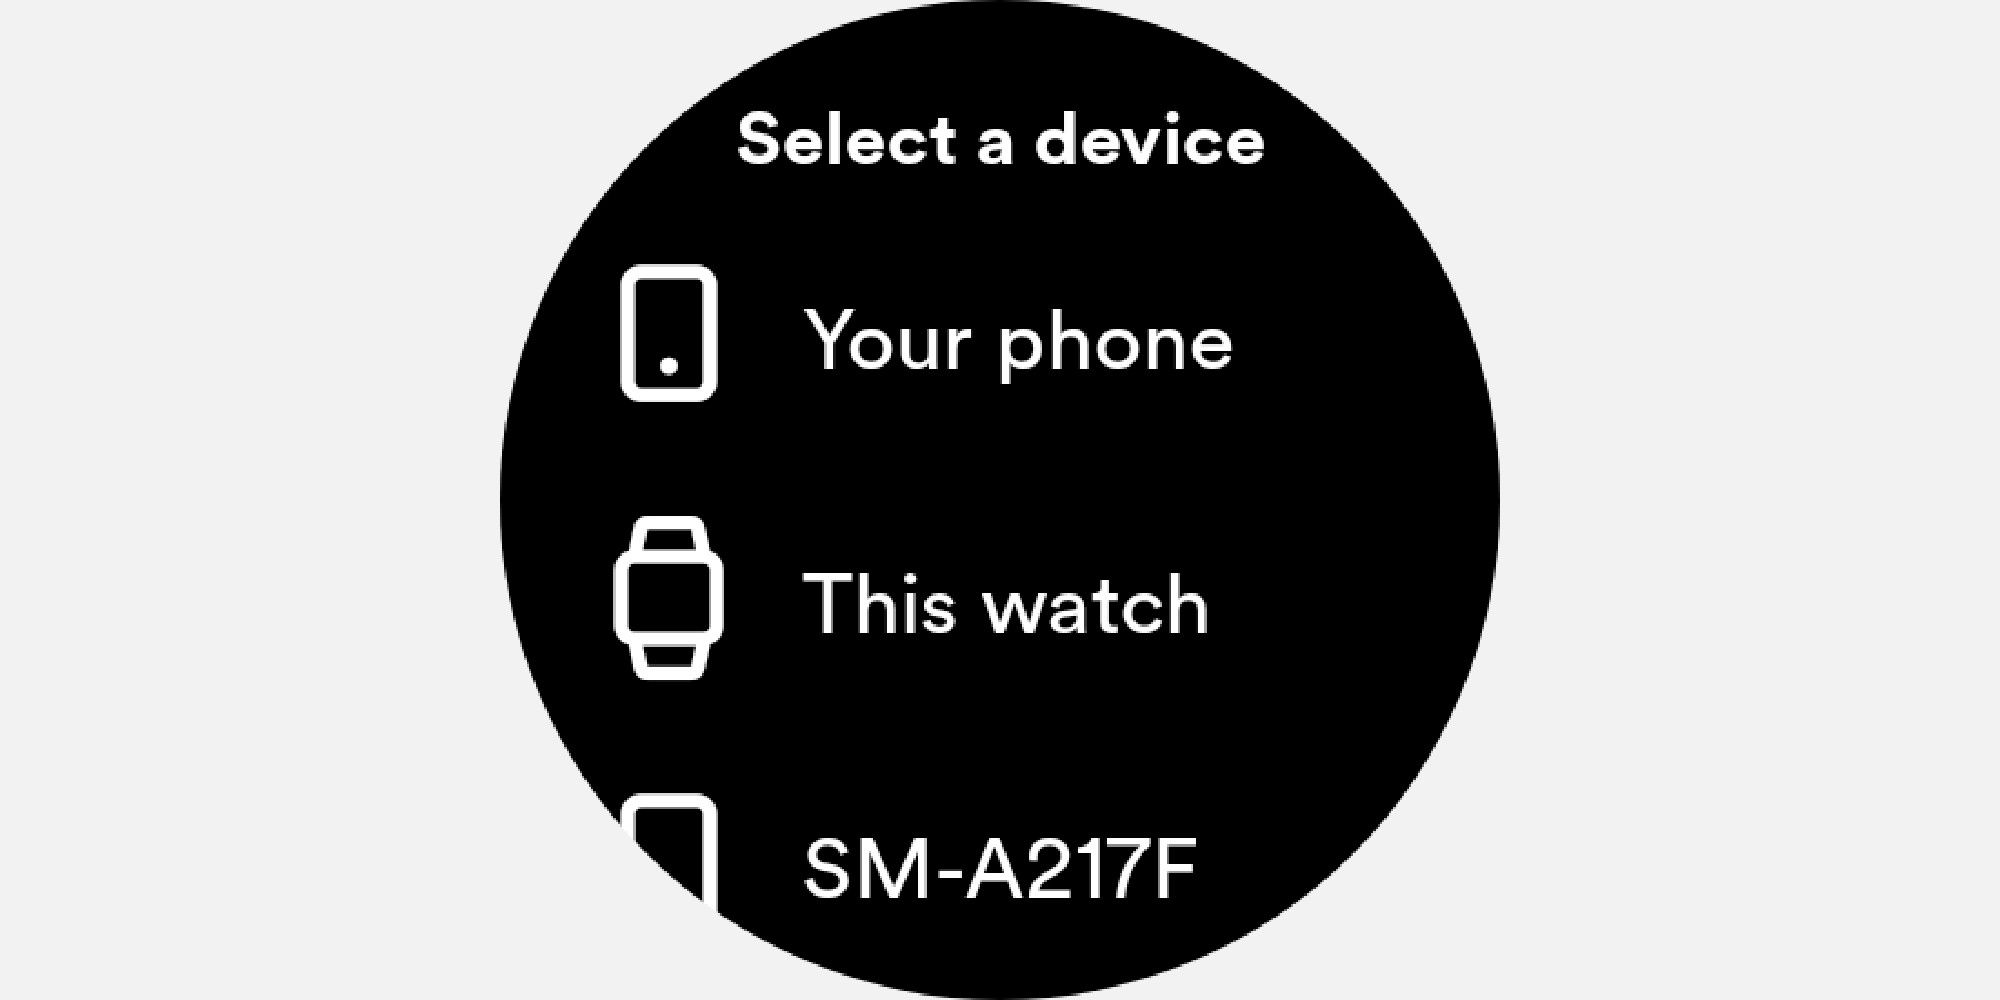 Opciones de dispositivo en el menú desplegable del reloj inteligente Galaxy 4